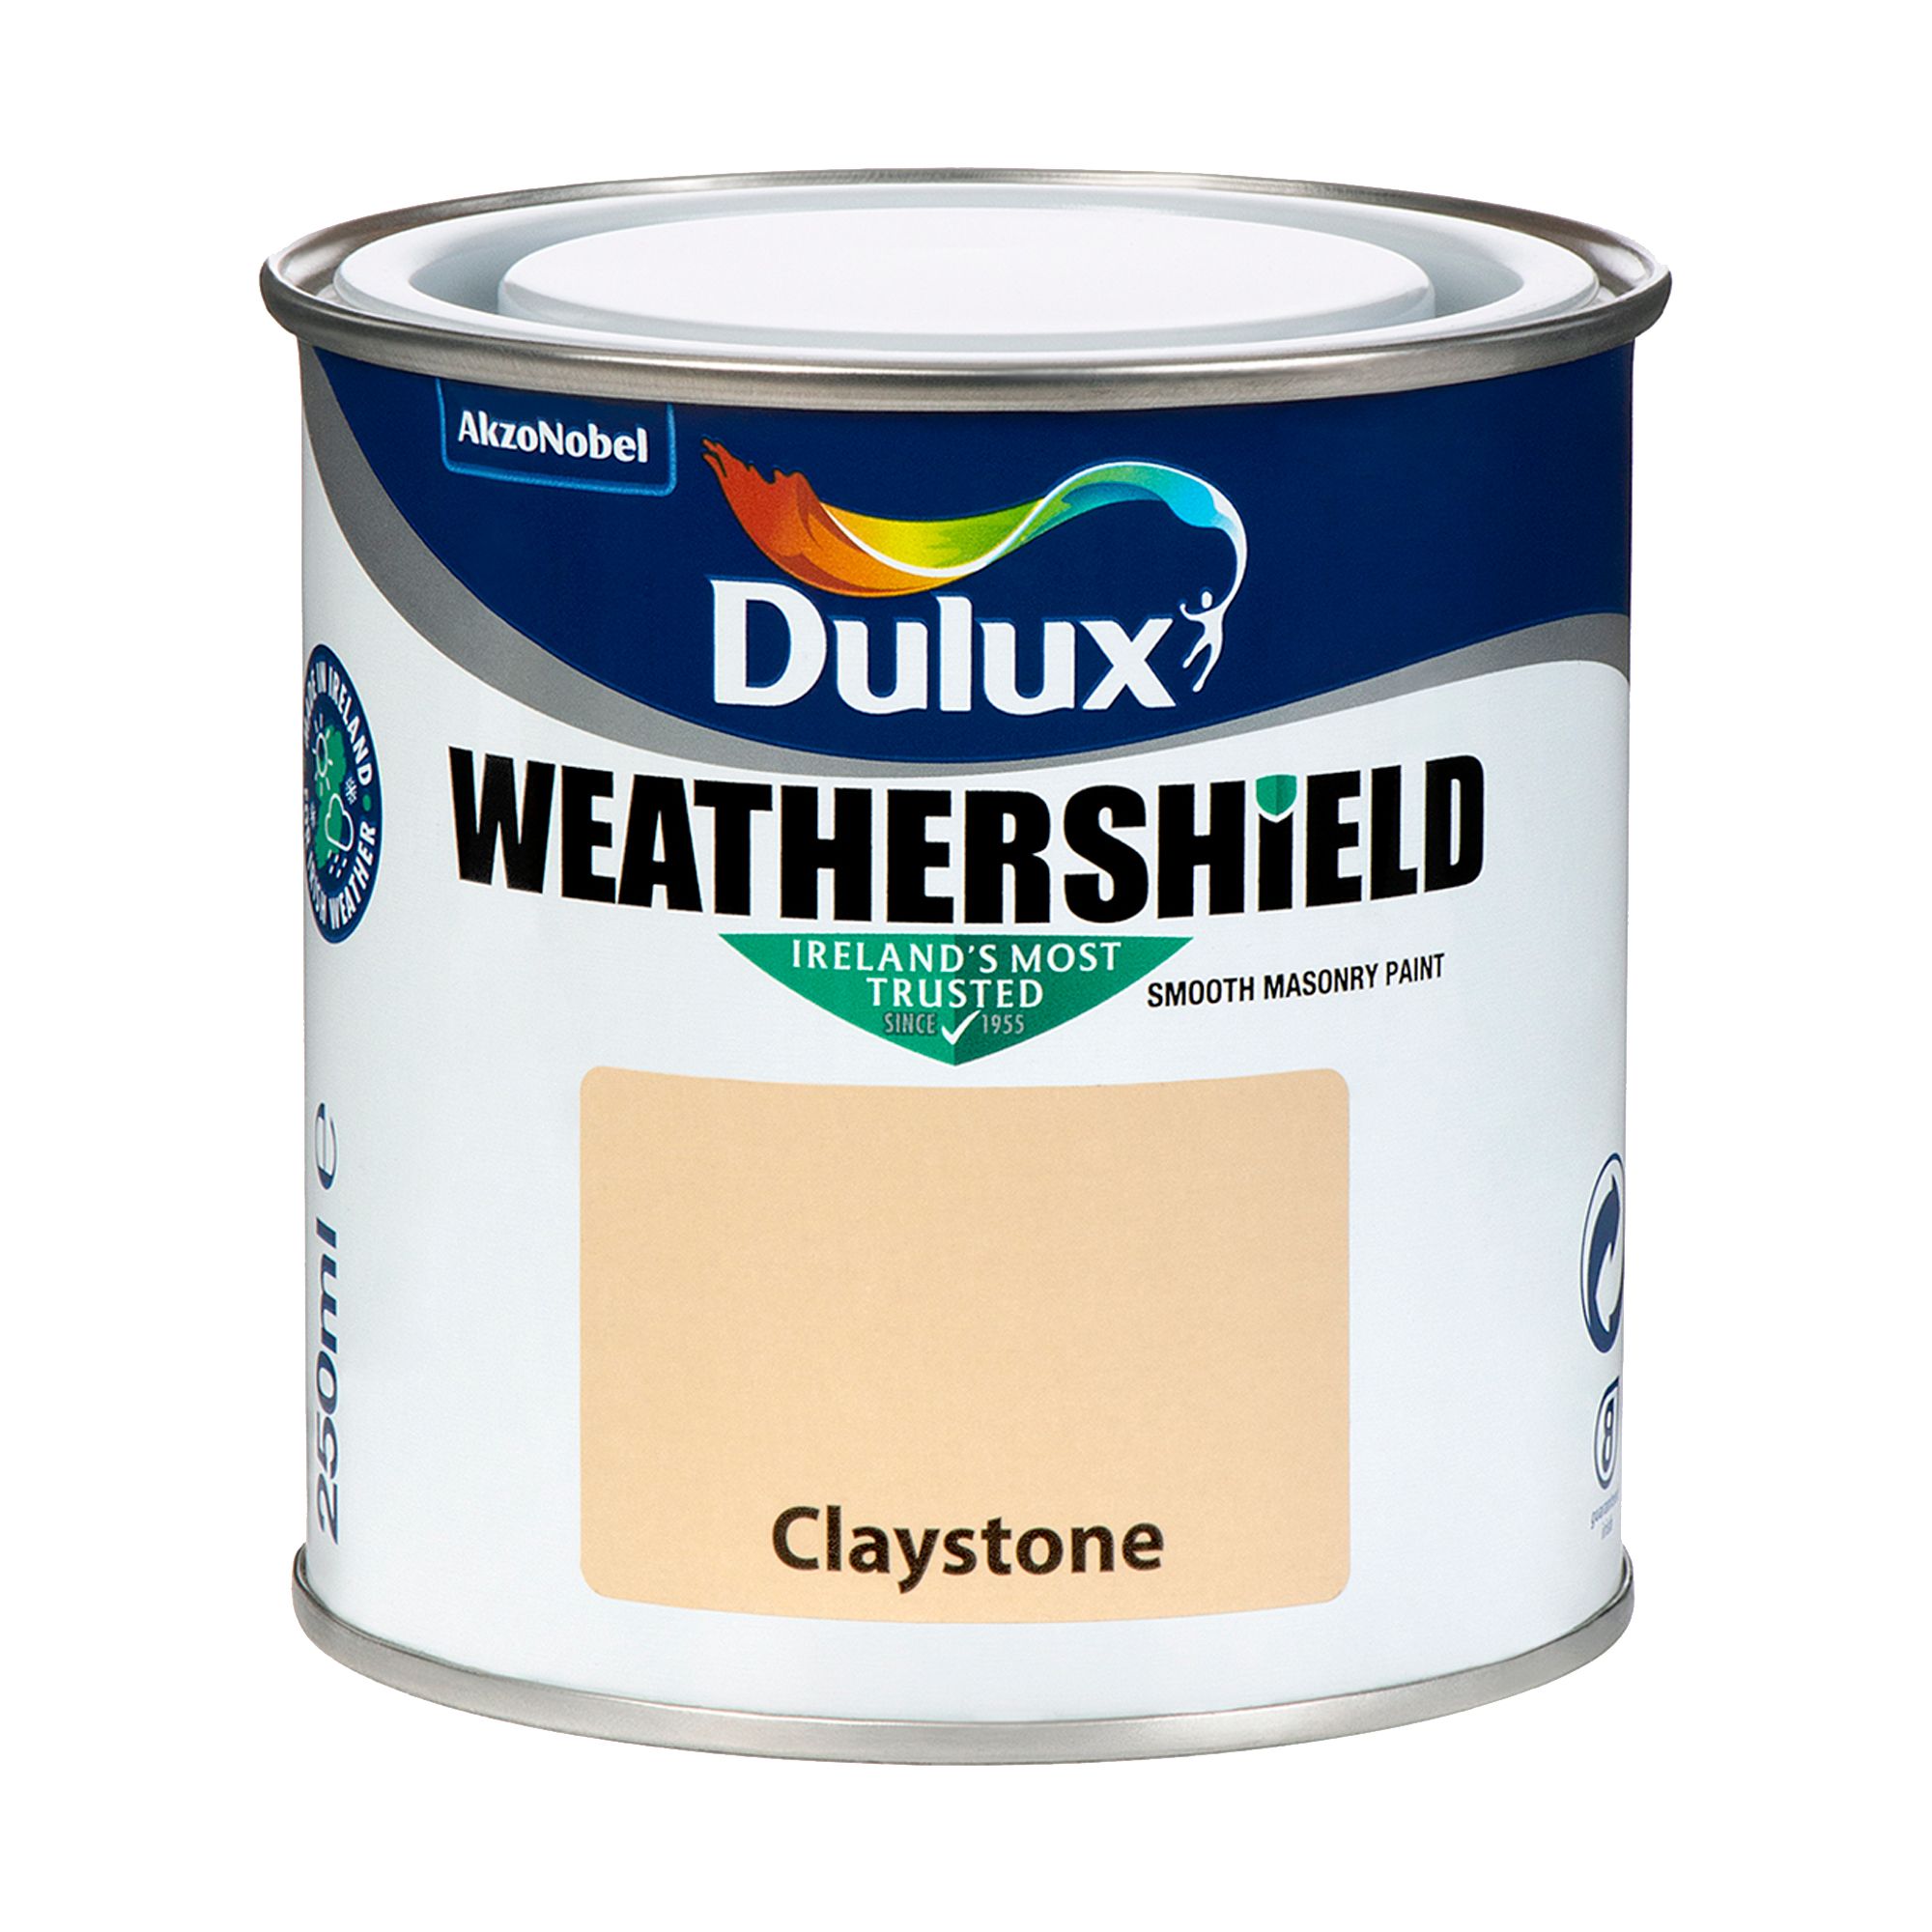 Dulux Weathershield Claystone Smooth Super matt Masonry paint, 250ml Tester pot